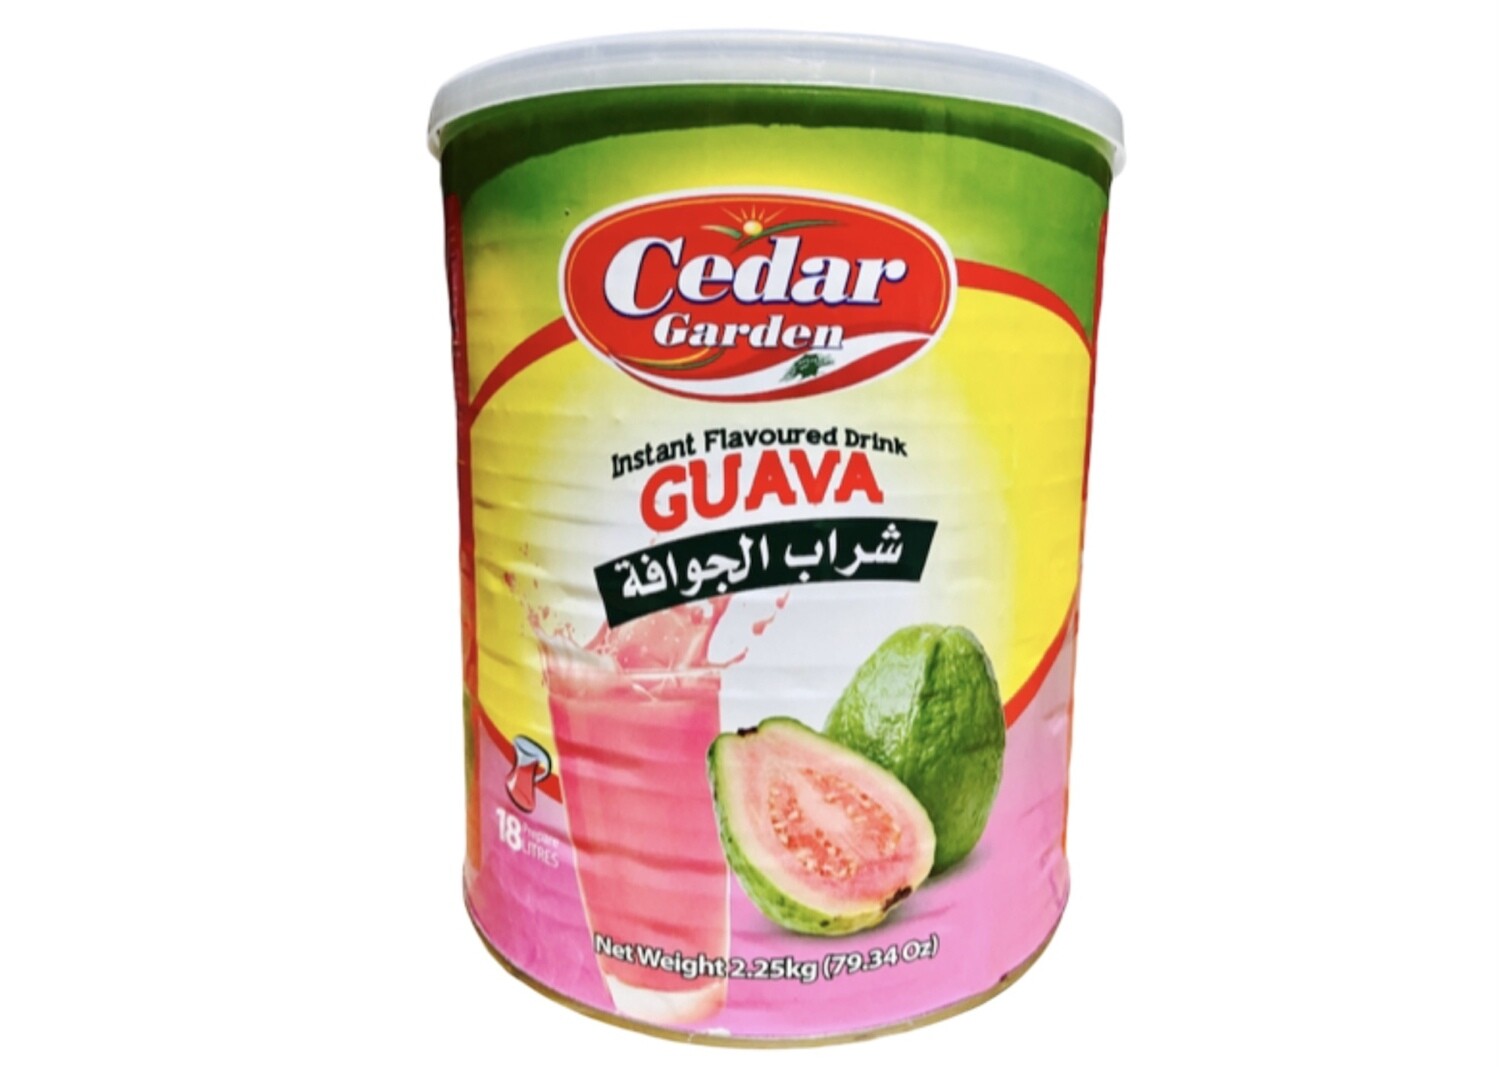 Cedar Garden Guava Instant Powder Drink  6x2.5kg